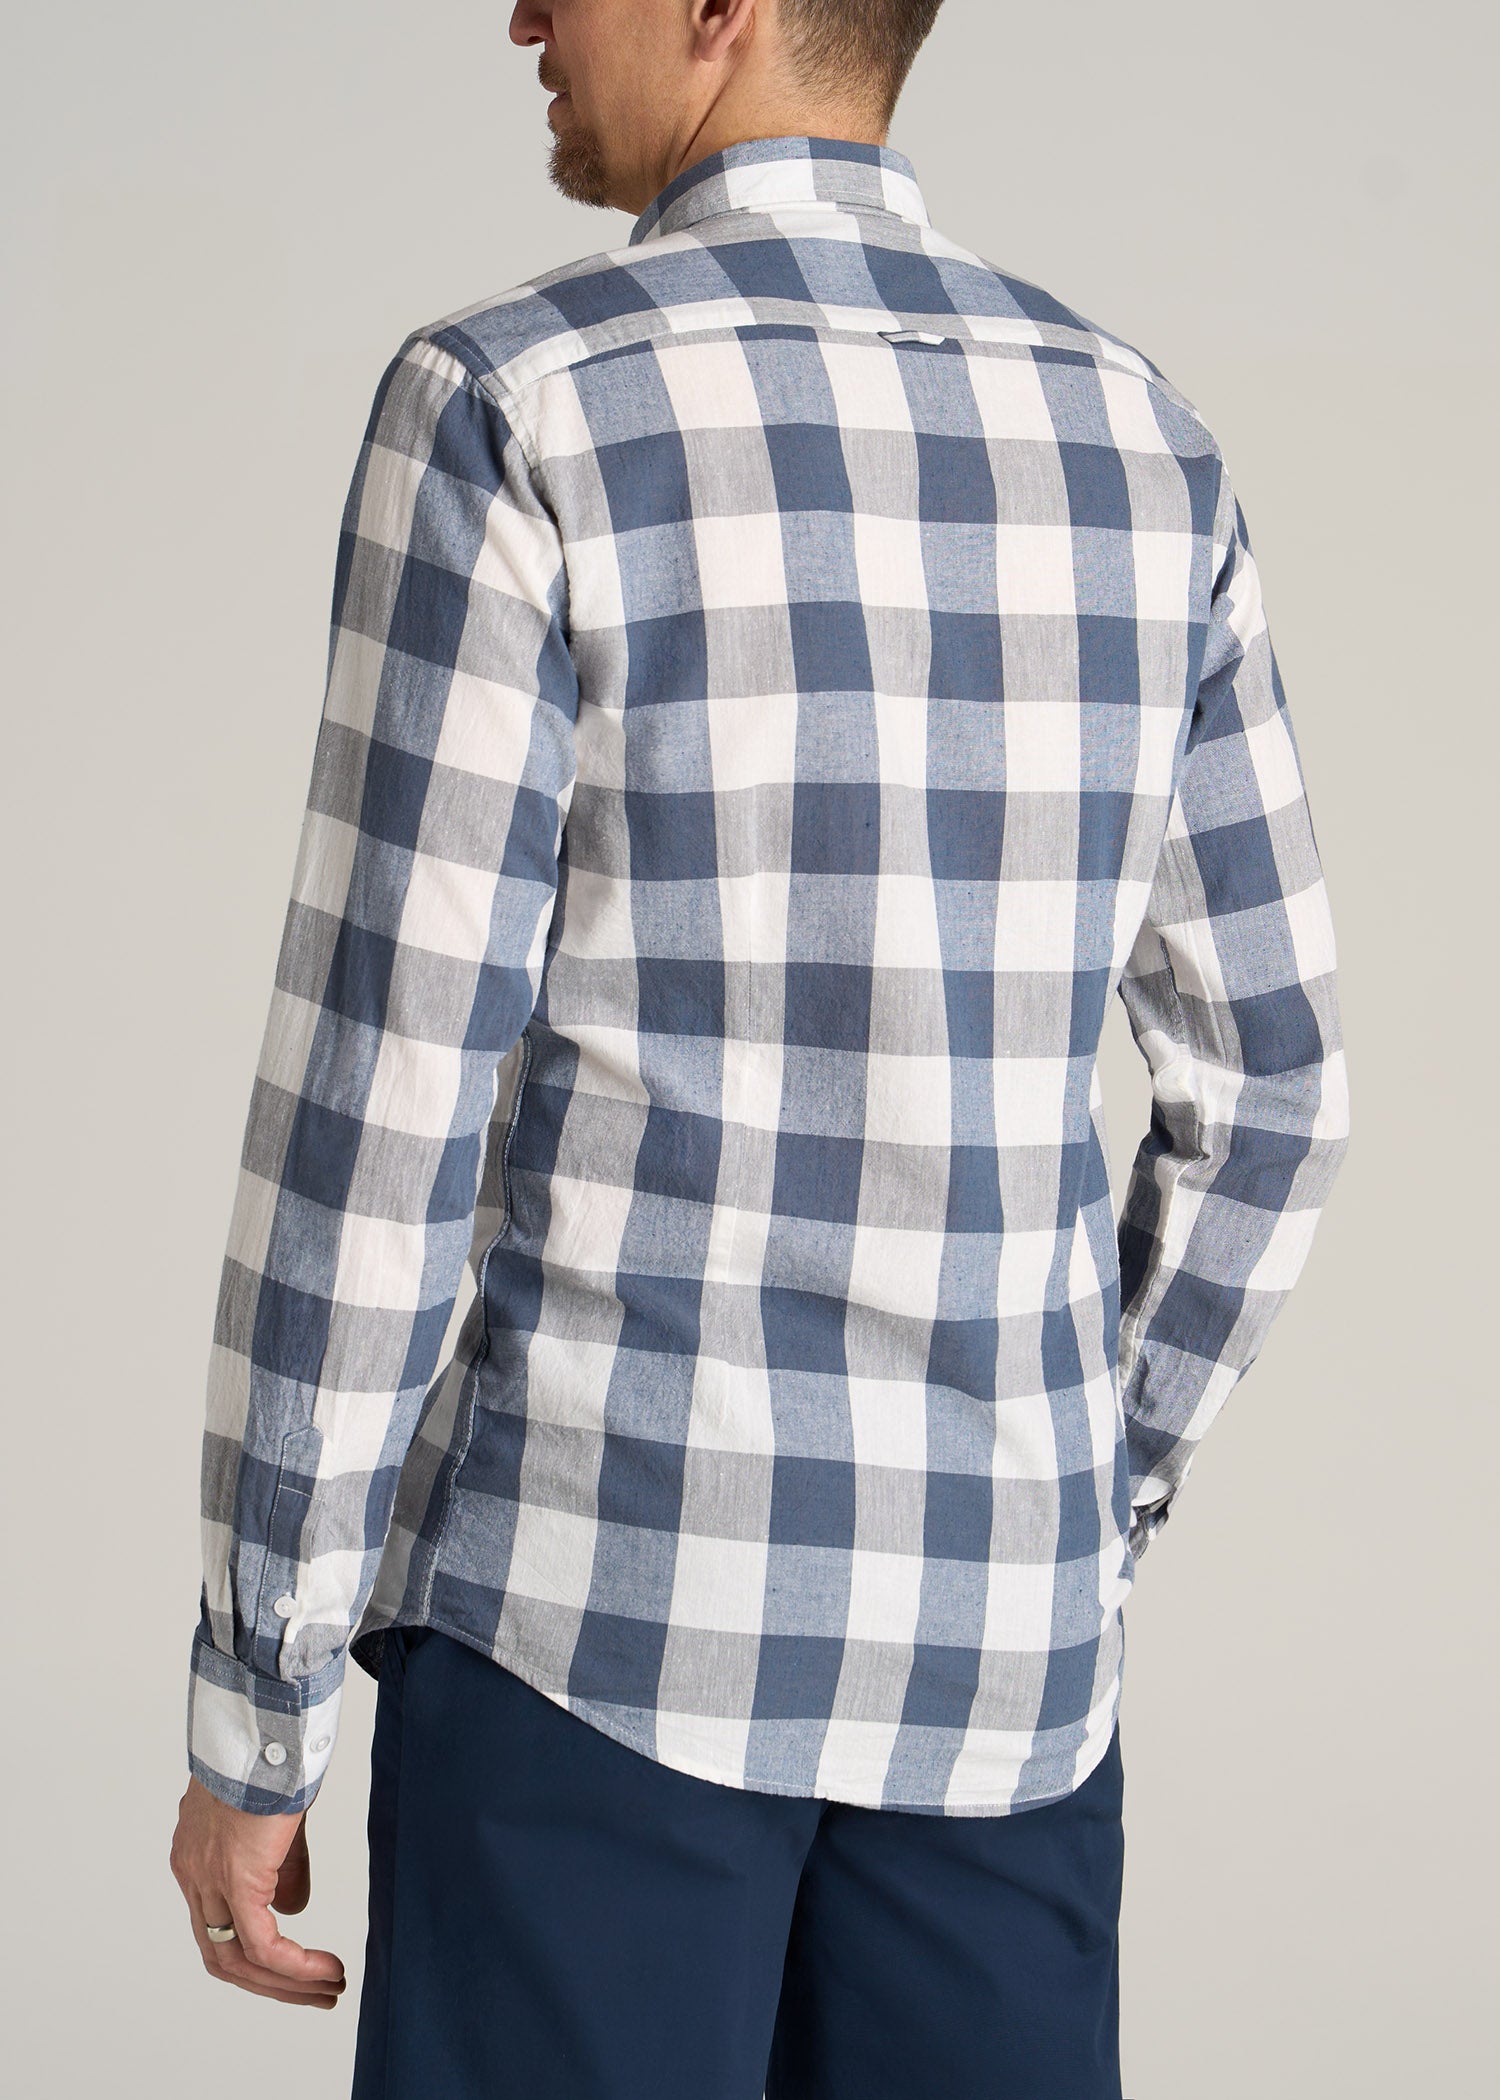 Linen Long Sleeve Shirt for Tall Men Grey & Navy | American Tall